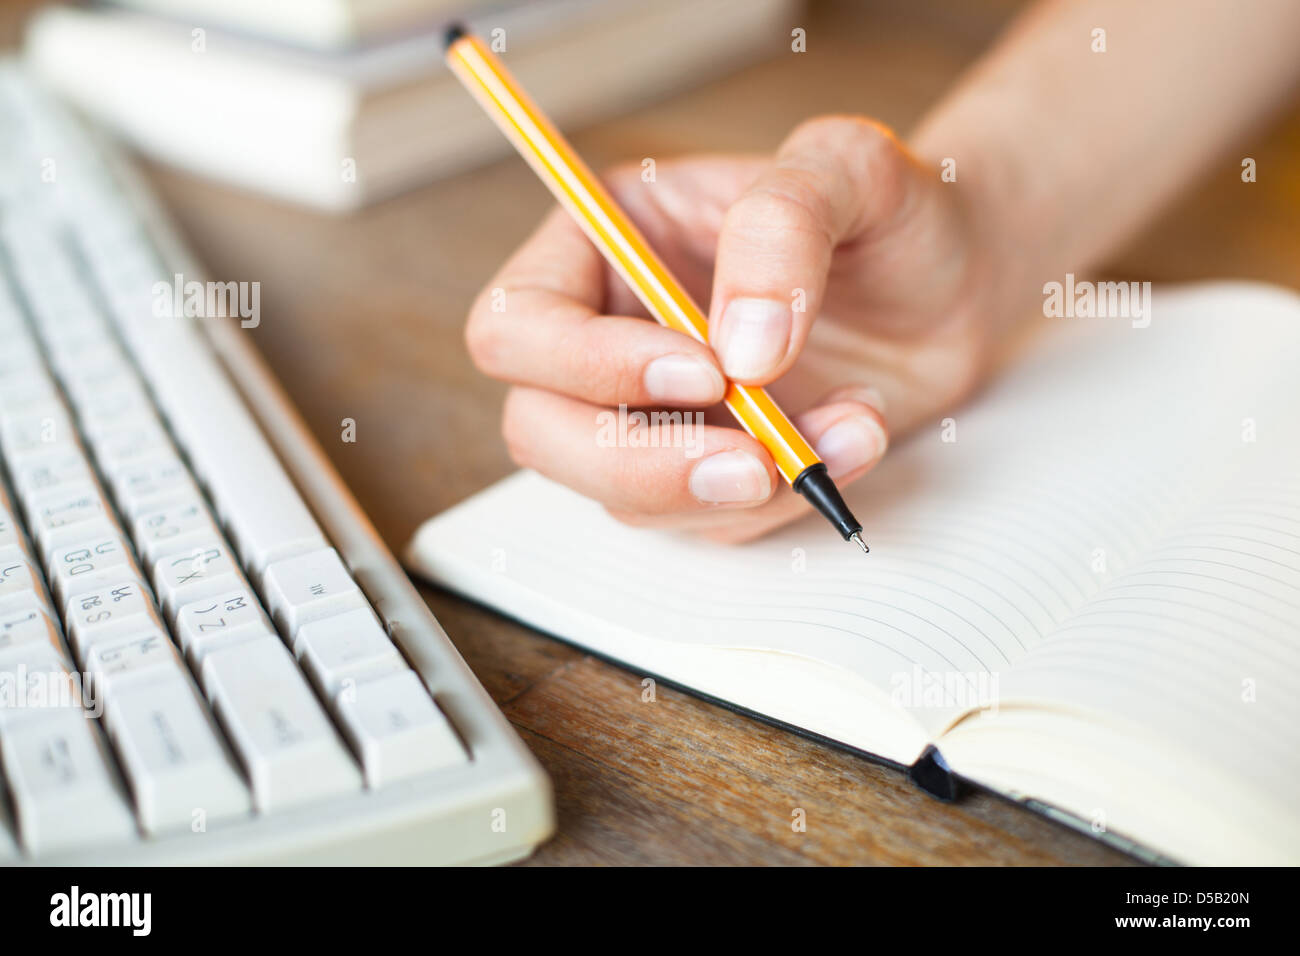 Hände, schreibt in einem Notebook, Tastatur, einen Stapel Bücher im Hintergrund Stockfoto